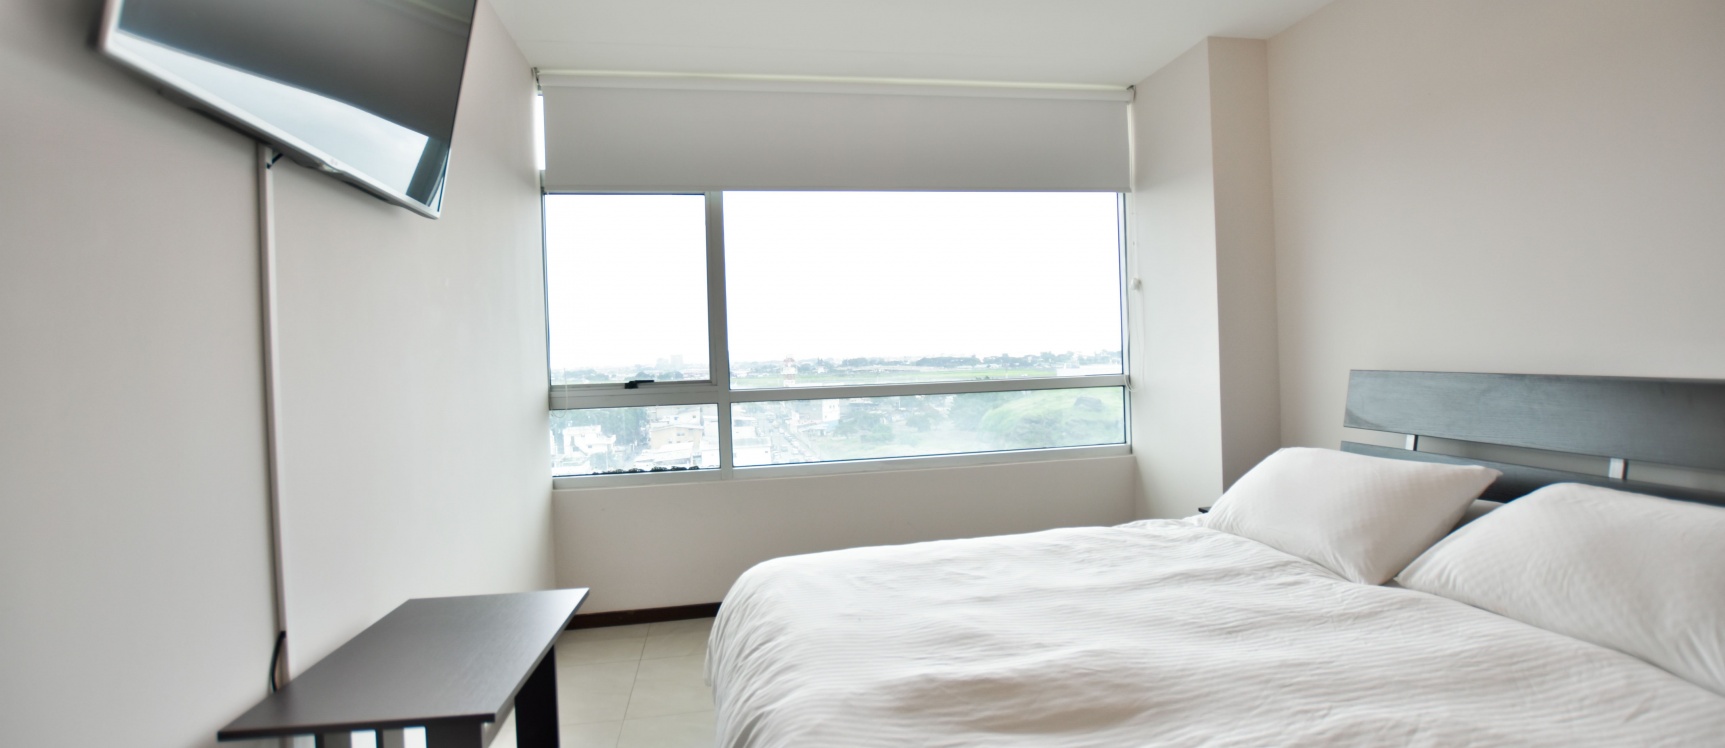 GeoBienes - Venta de suite en edificio Elite Building, piso 6 - Plusvalia Guayaquil Casas de venta y alquiler Inmobiliaria Ecuador